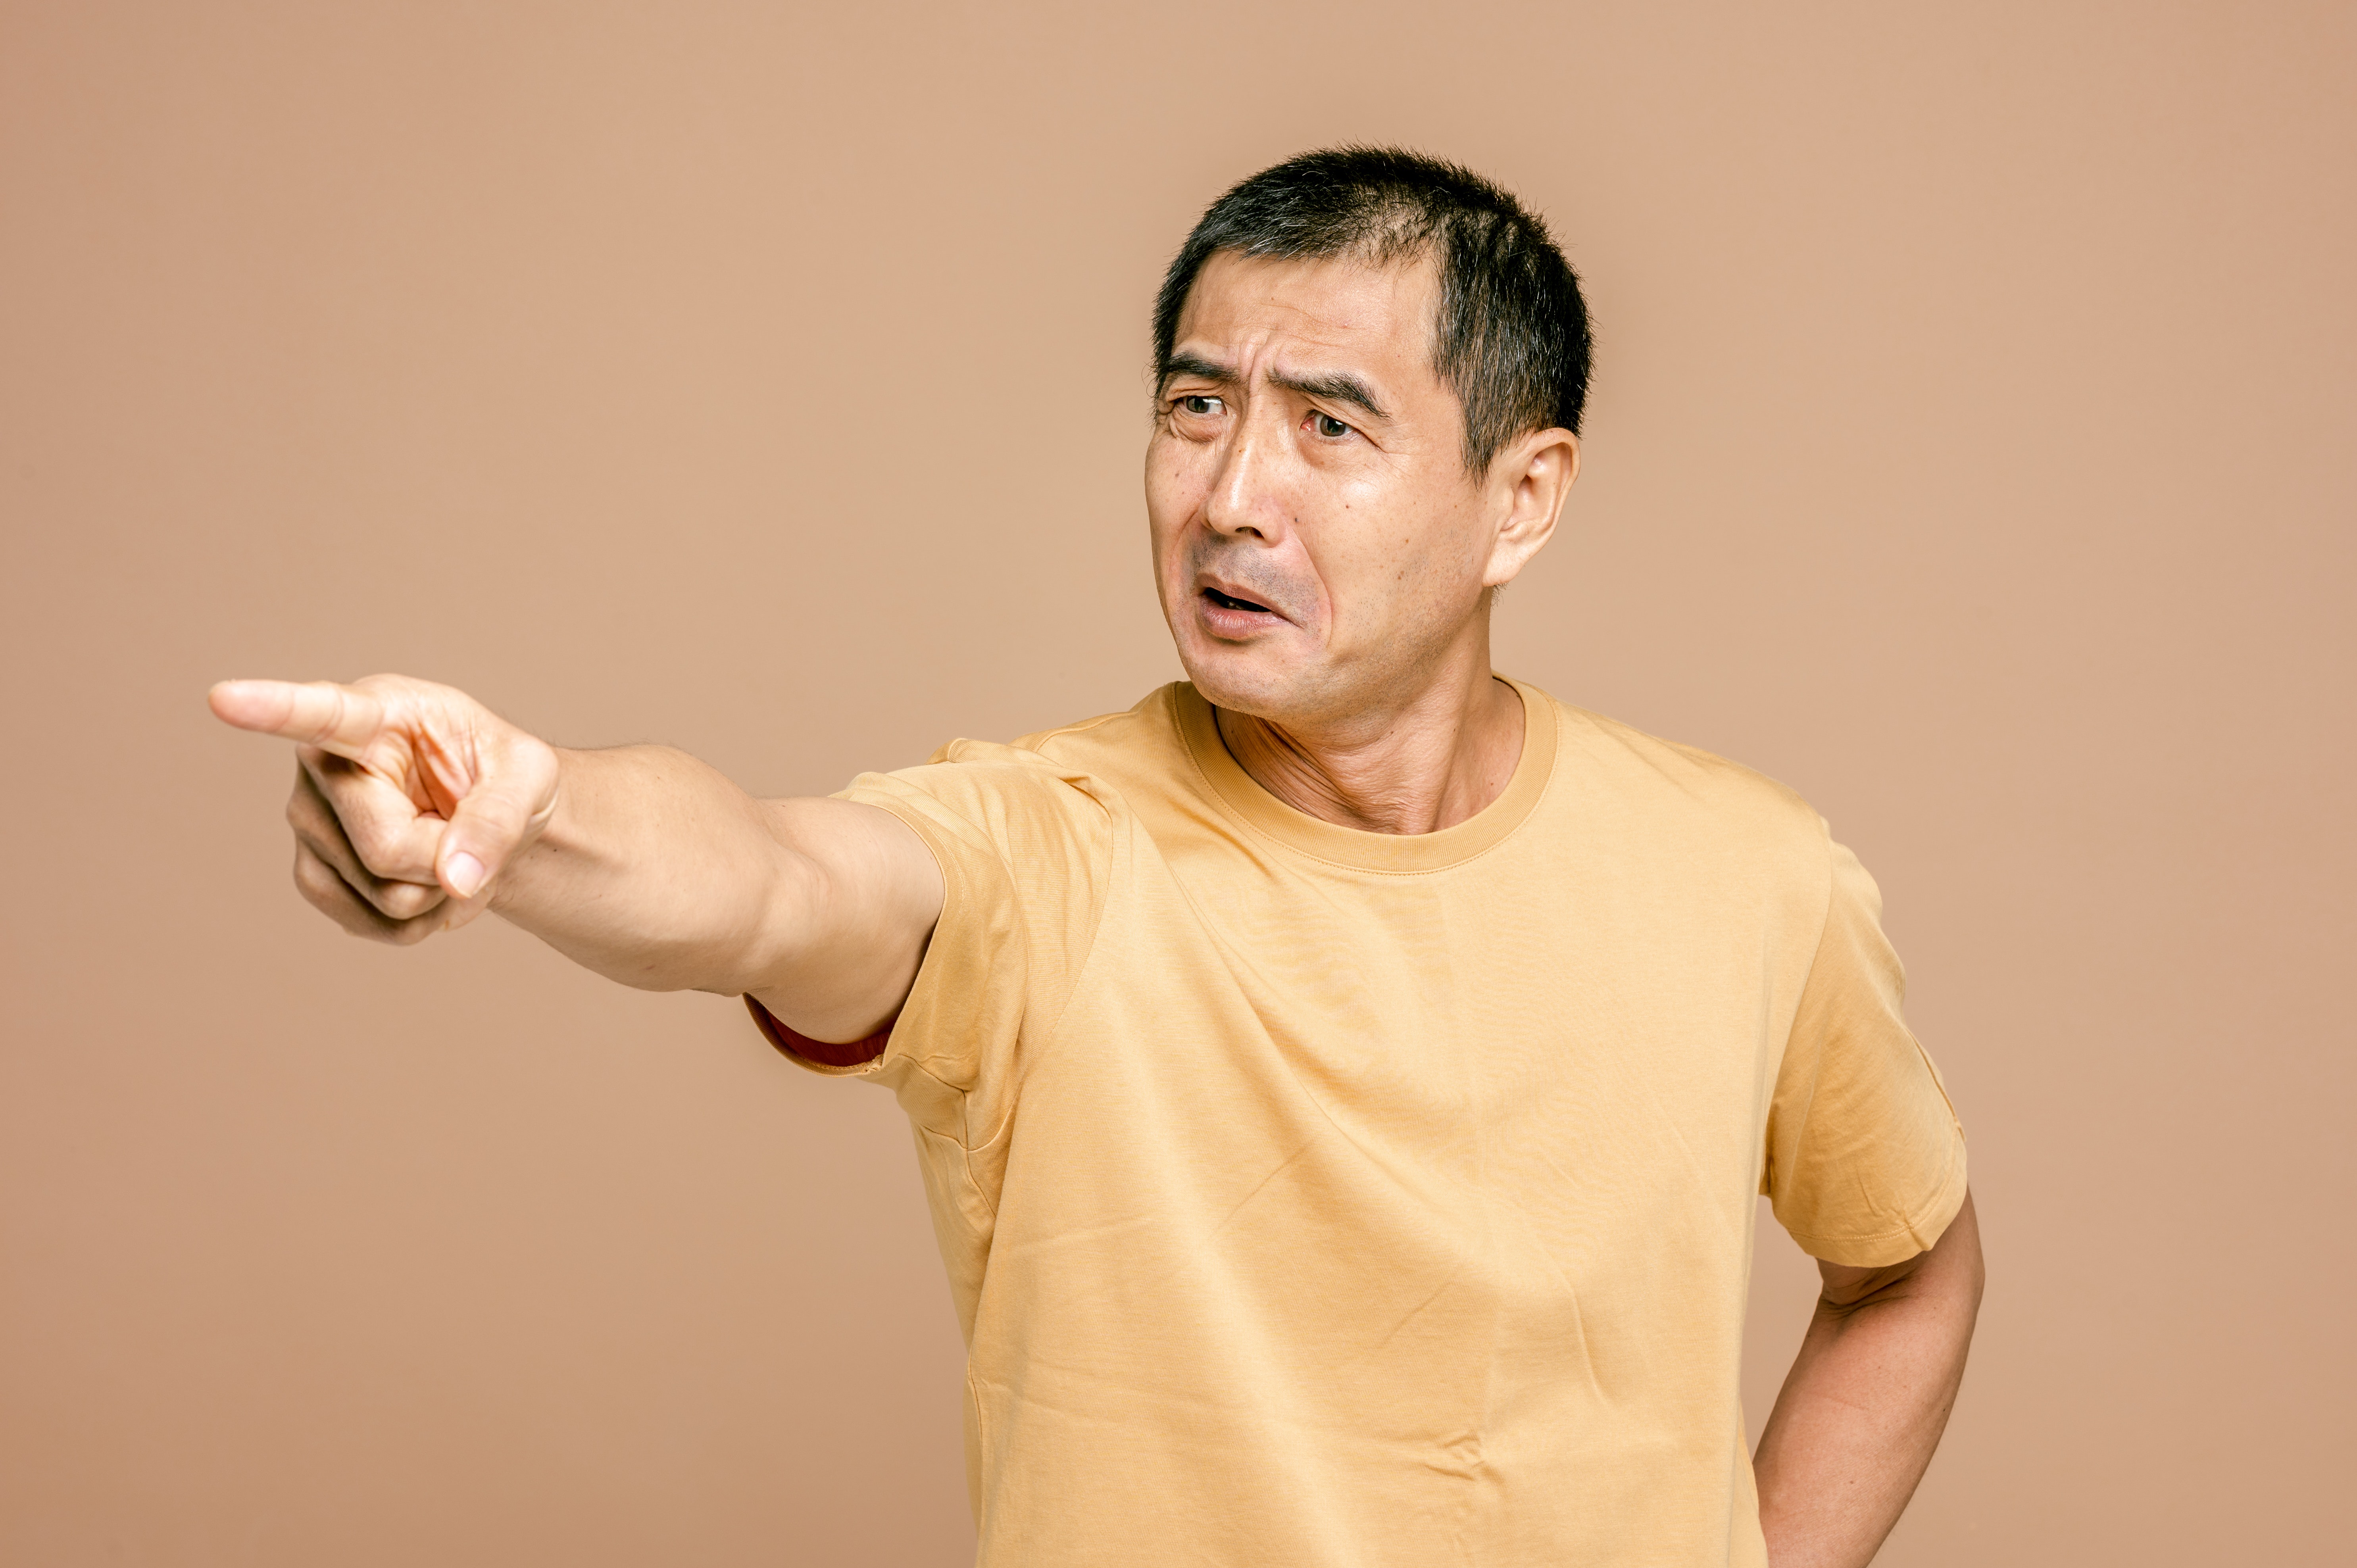 एक बूढ़ा एशियाई आदमी एक उंगली को सीधे बाहर की ओर इशारा करता है, जो चकित और घृणित दिखता है।